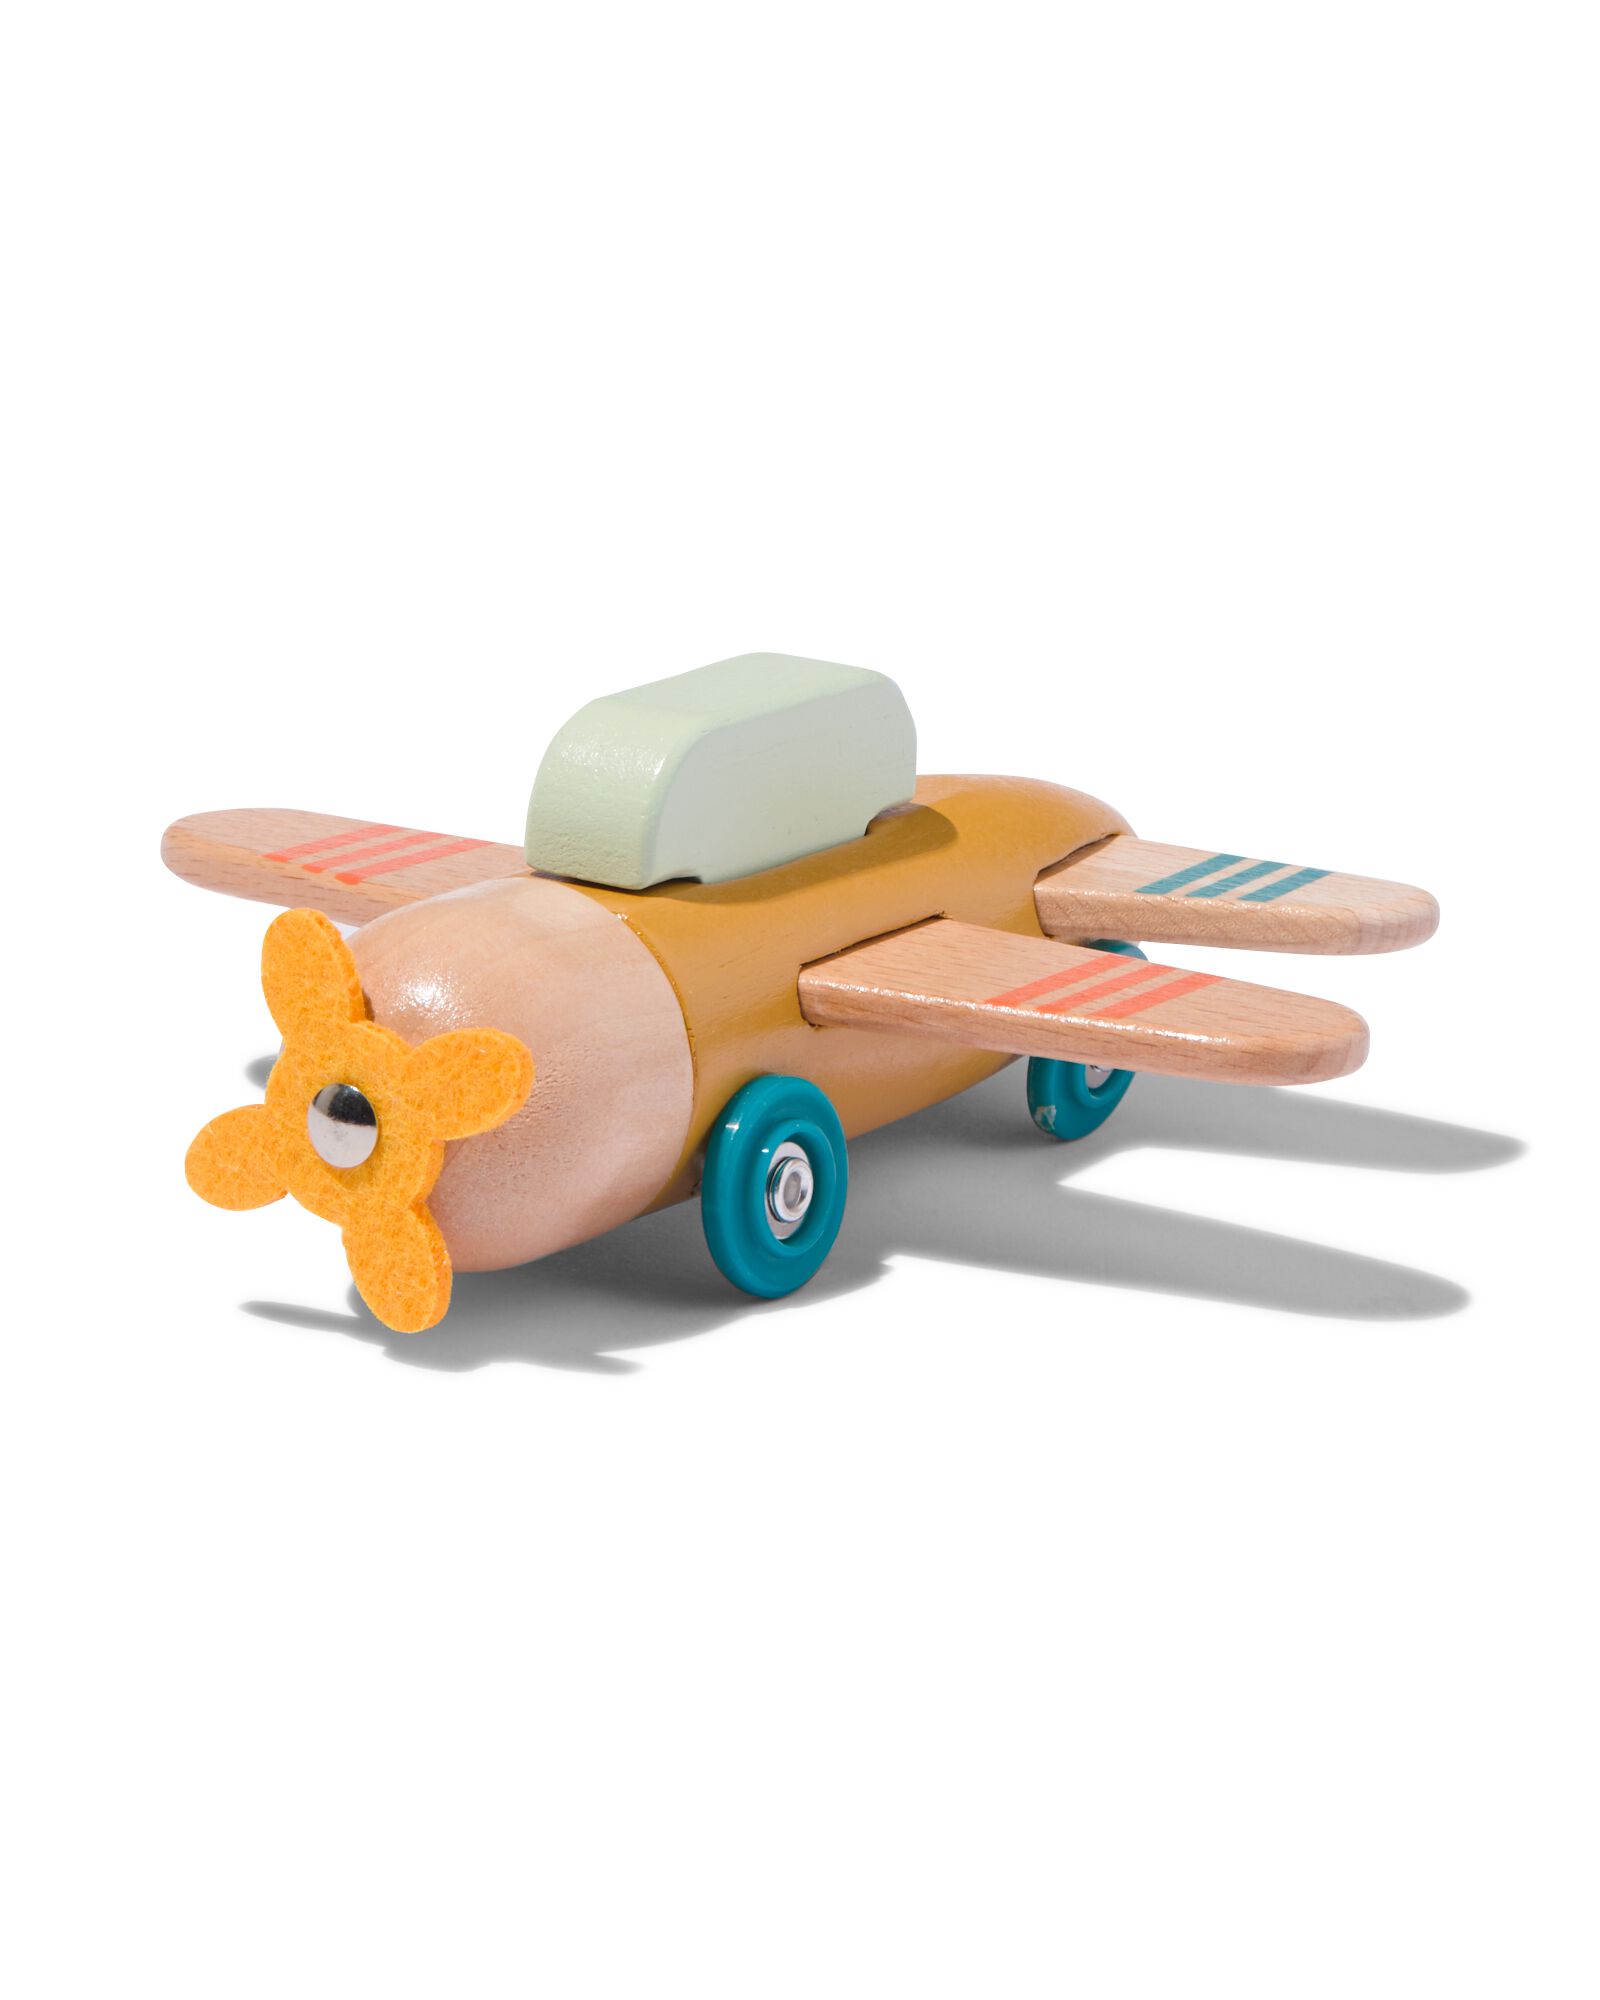 Amélia l'avion en bois à roulettes - Jouet en bois